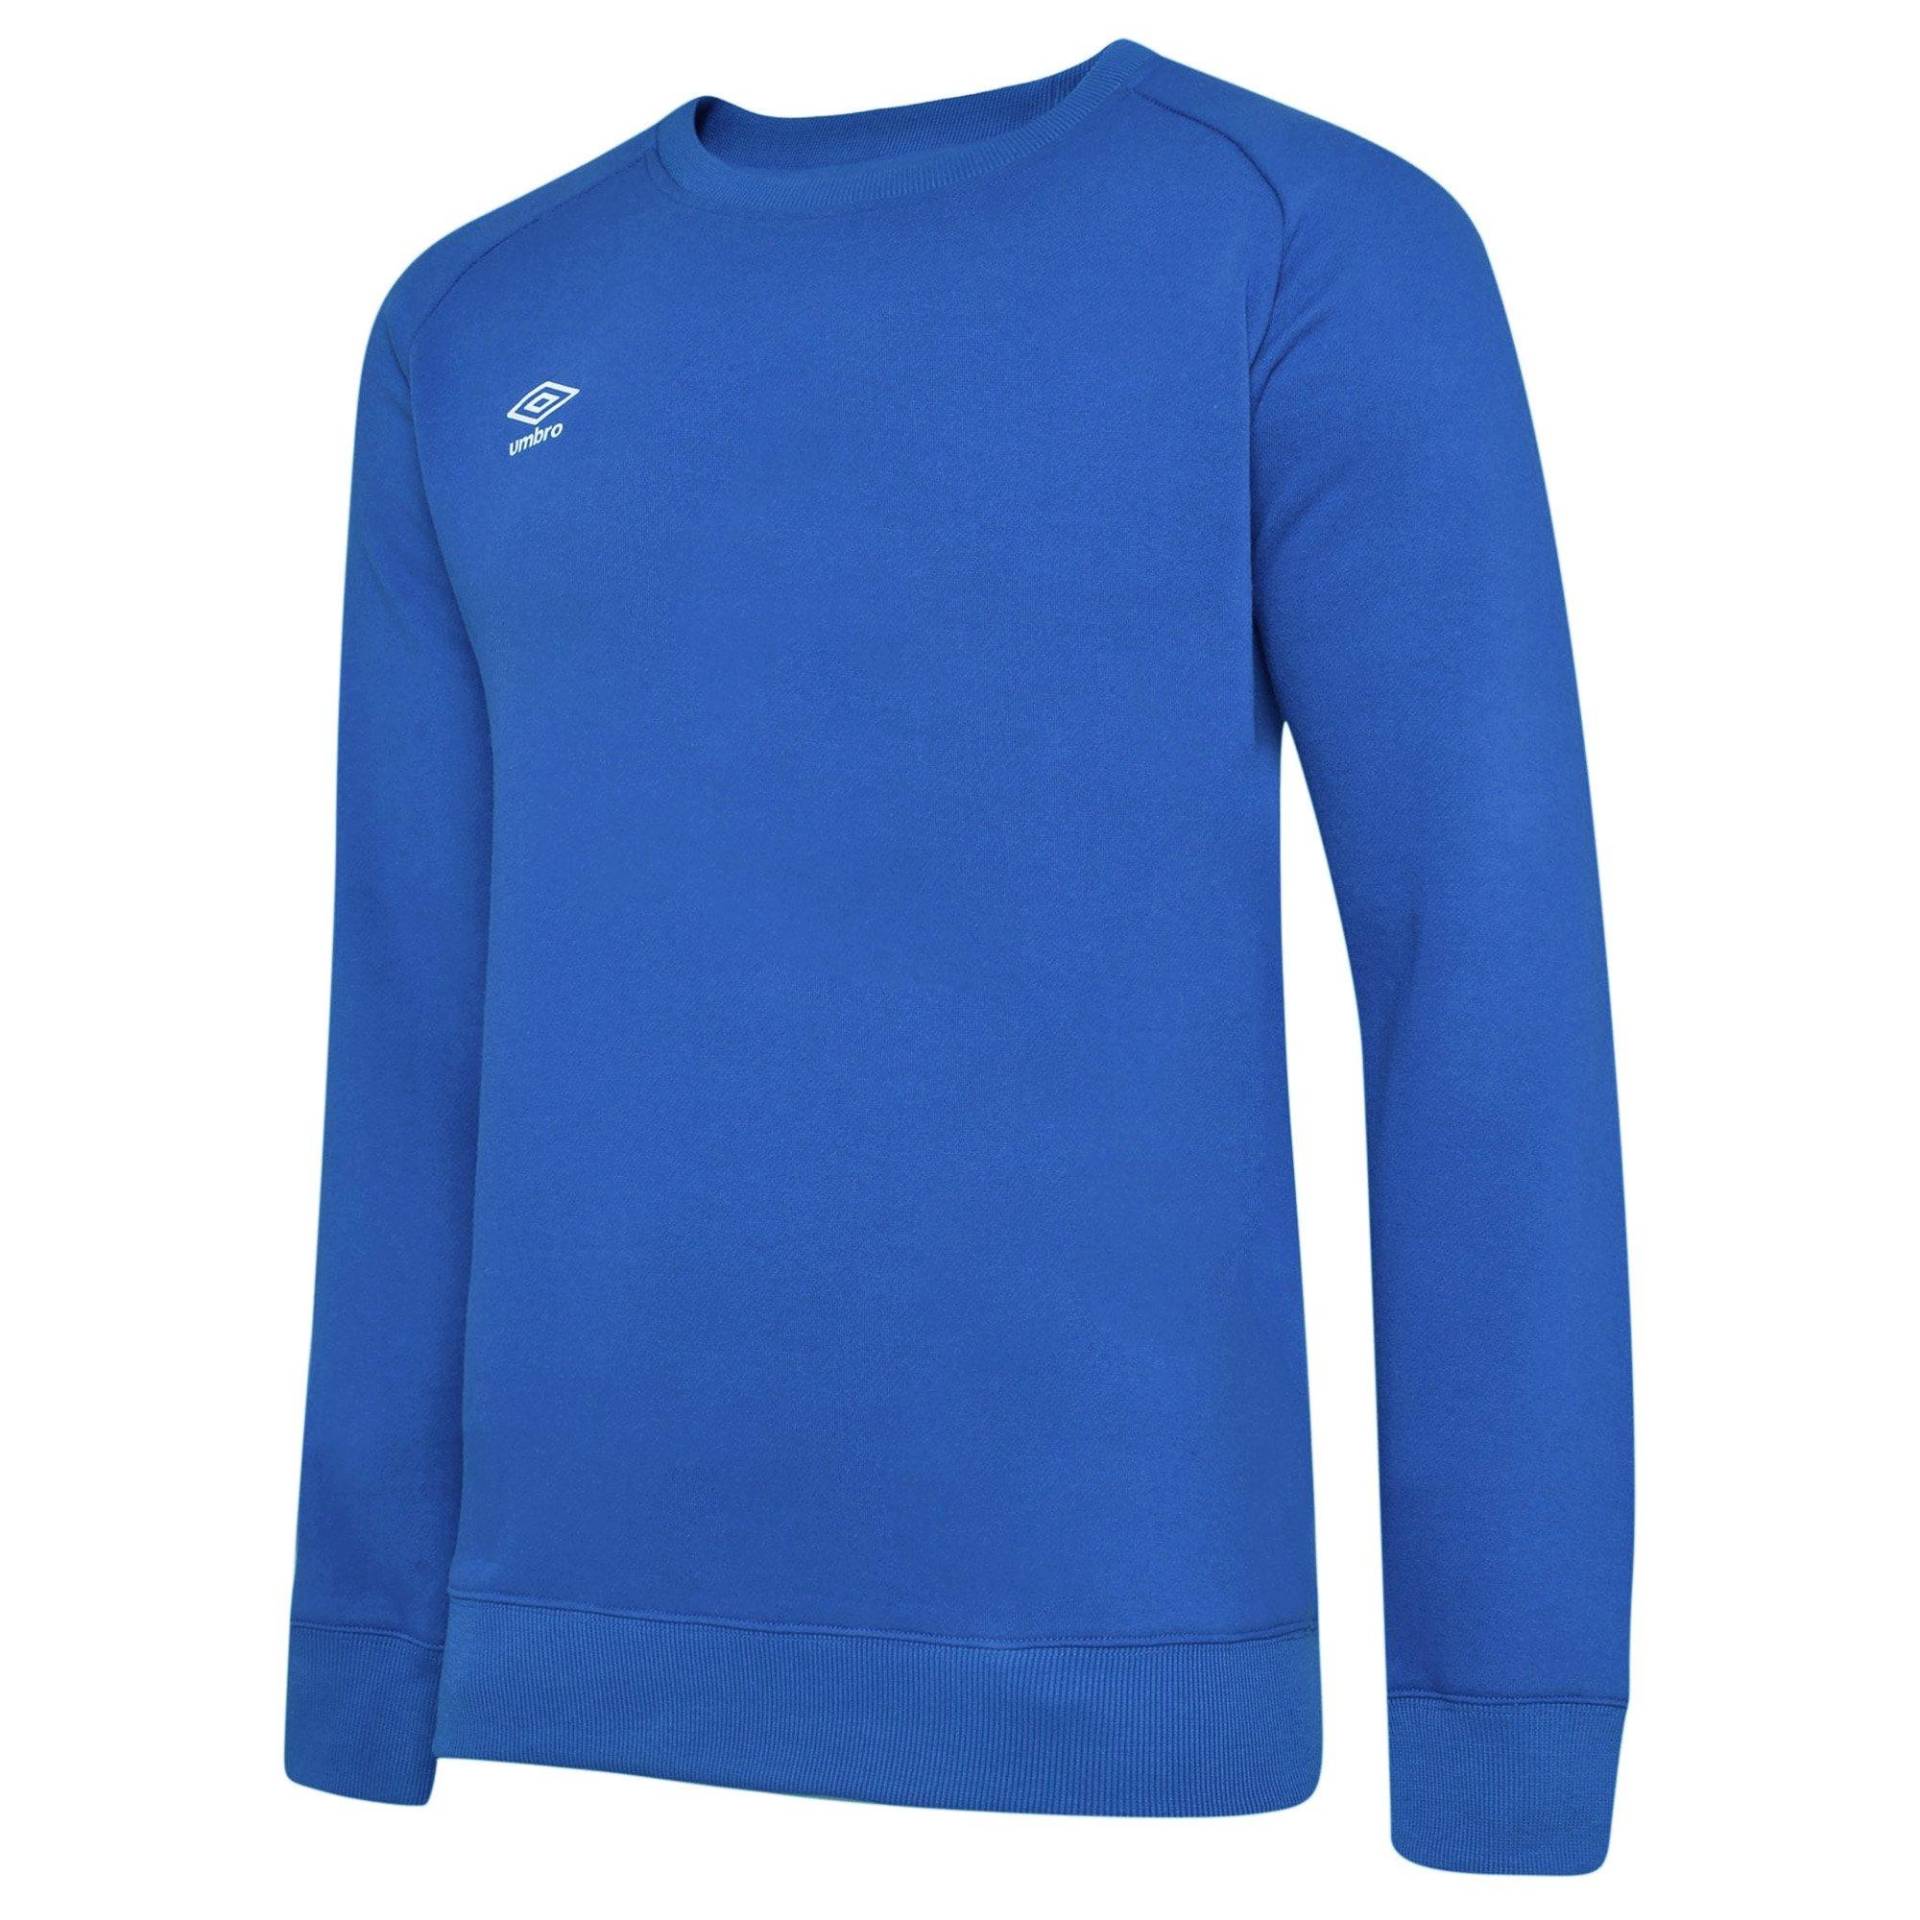 Club Leisure Sweatshirt Damen Blau XL von Umbro